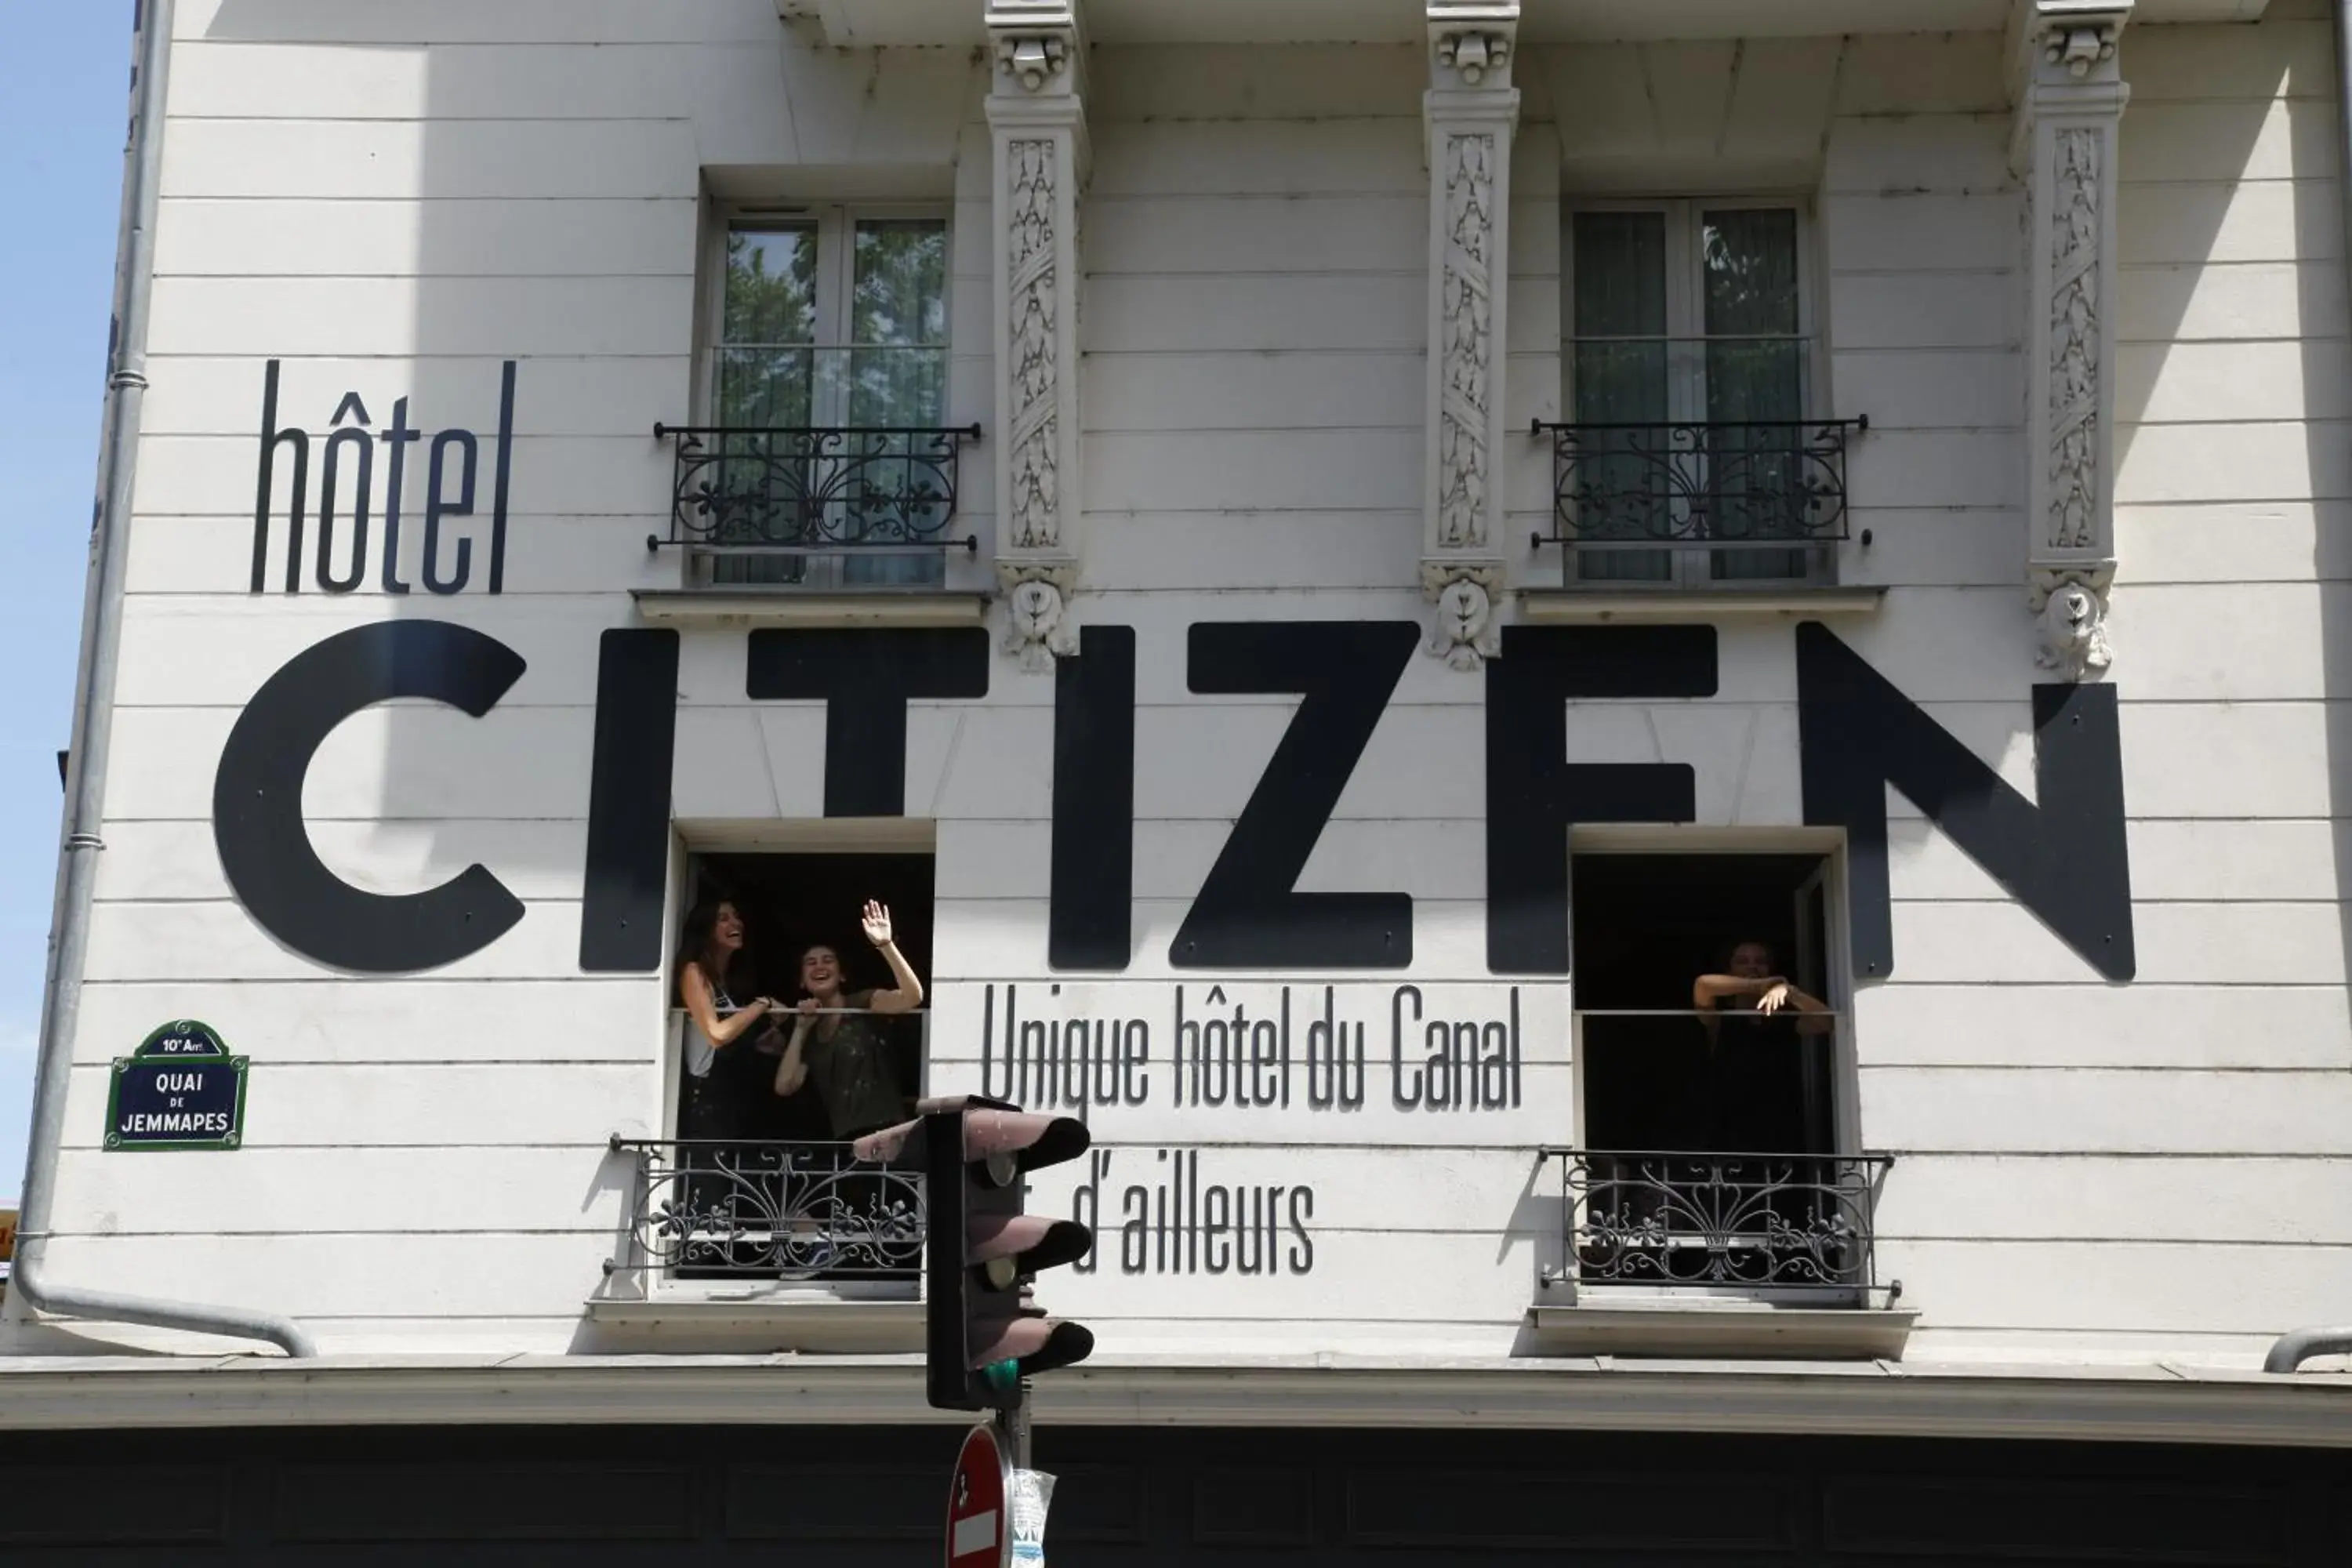 Facade/entrance in Le Citizen Hotel